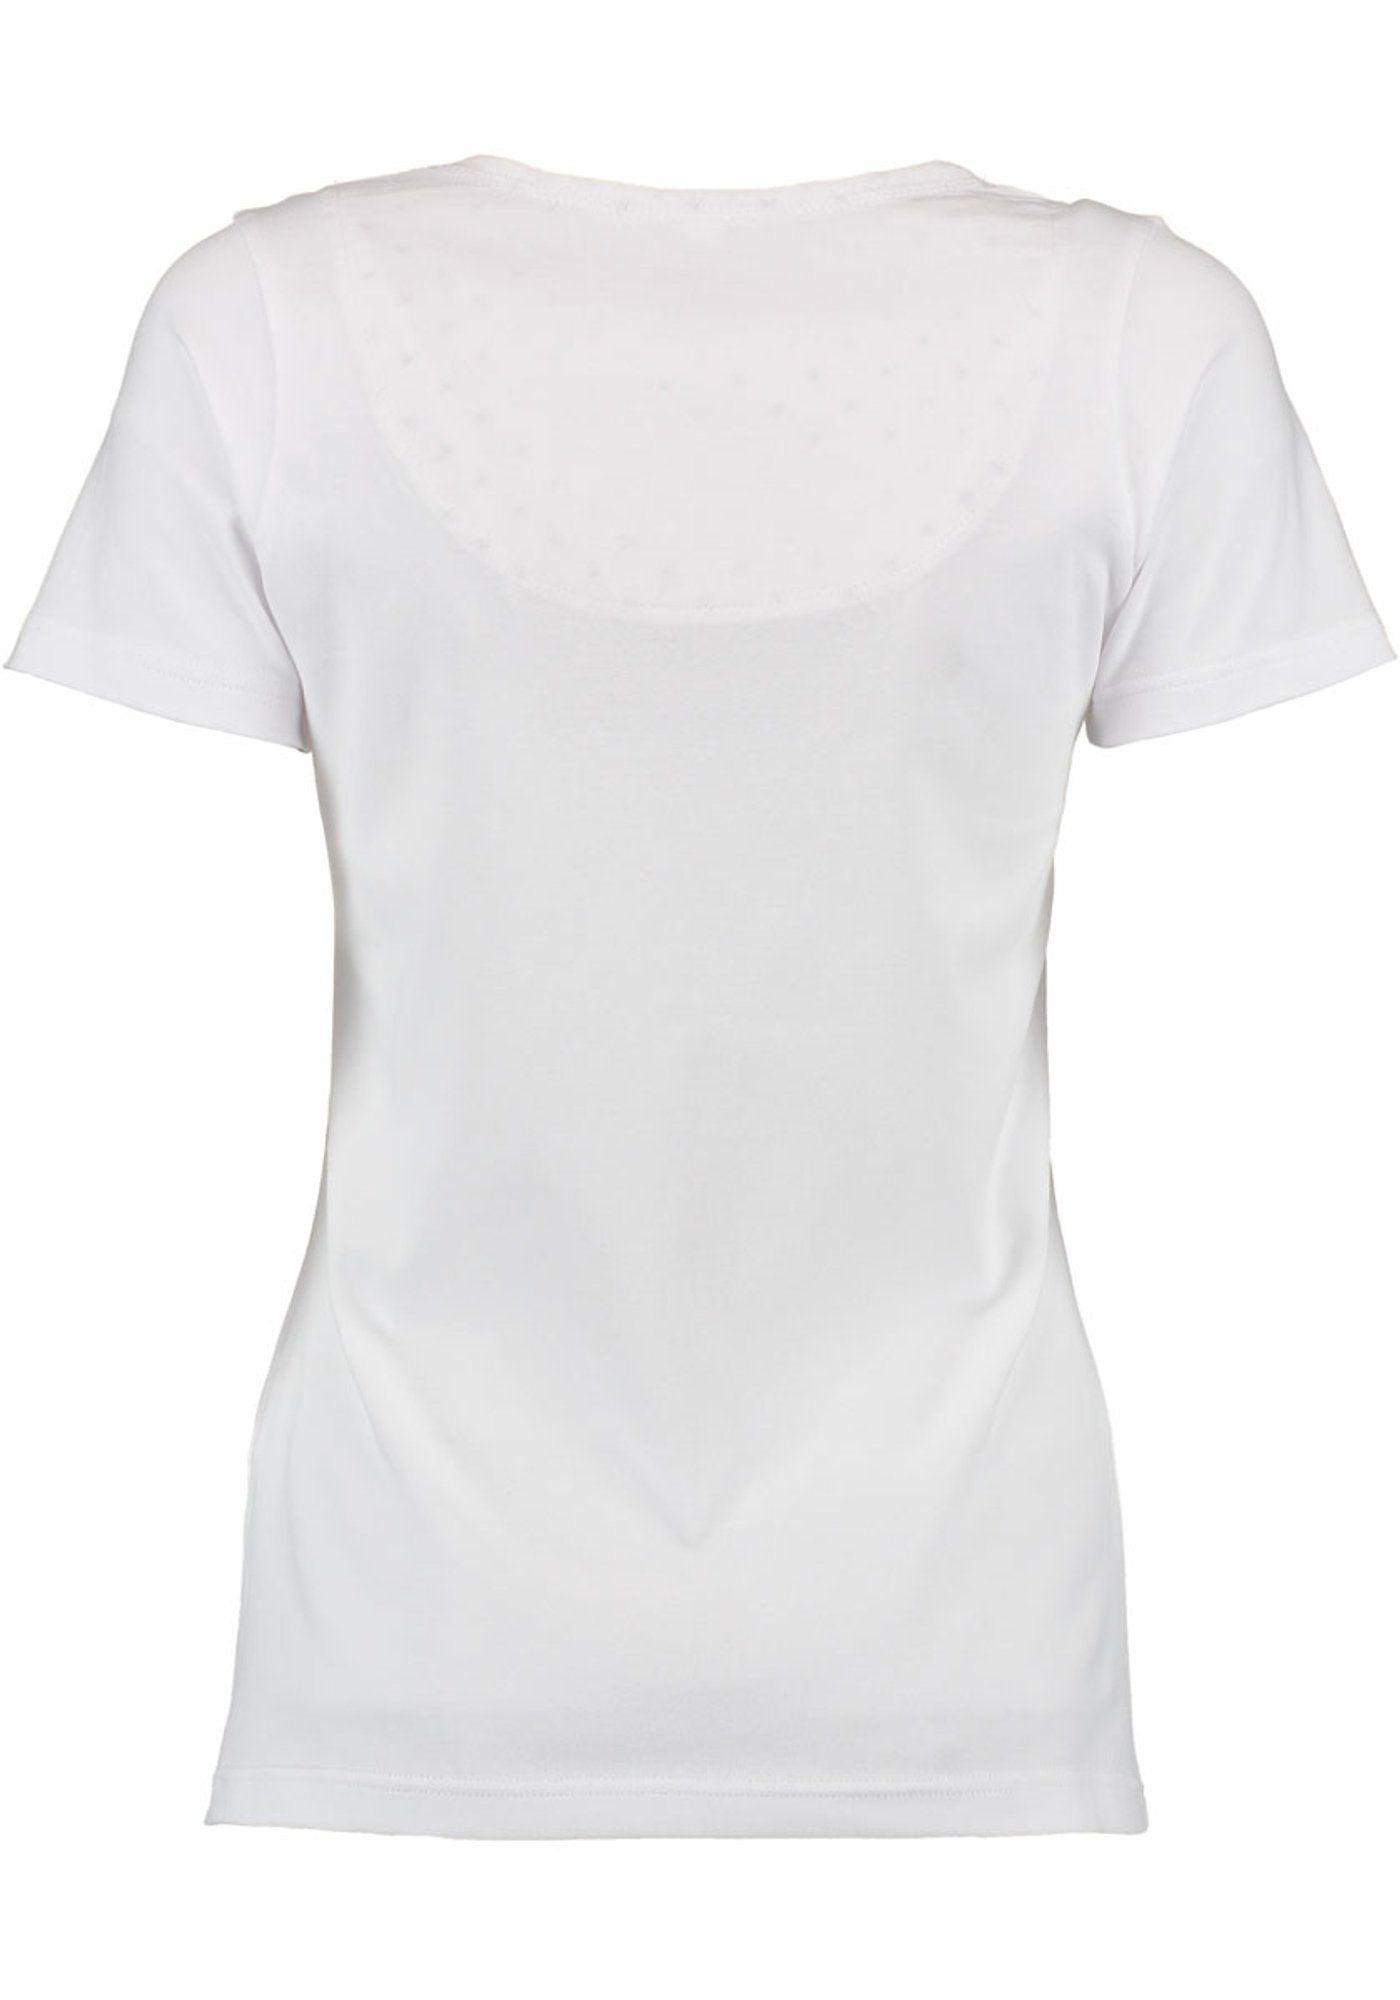 Trachtenshirt Brust T-Shirt Uginoy OS-Trachten der mit auf Strass-Hirsch weiß Kurzarm